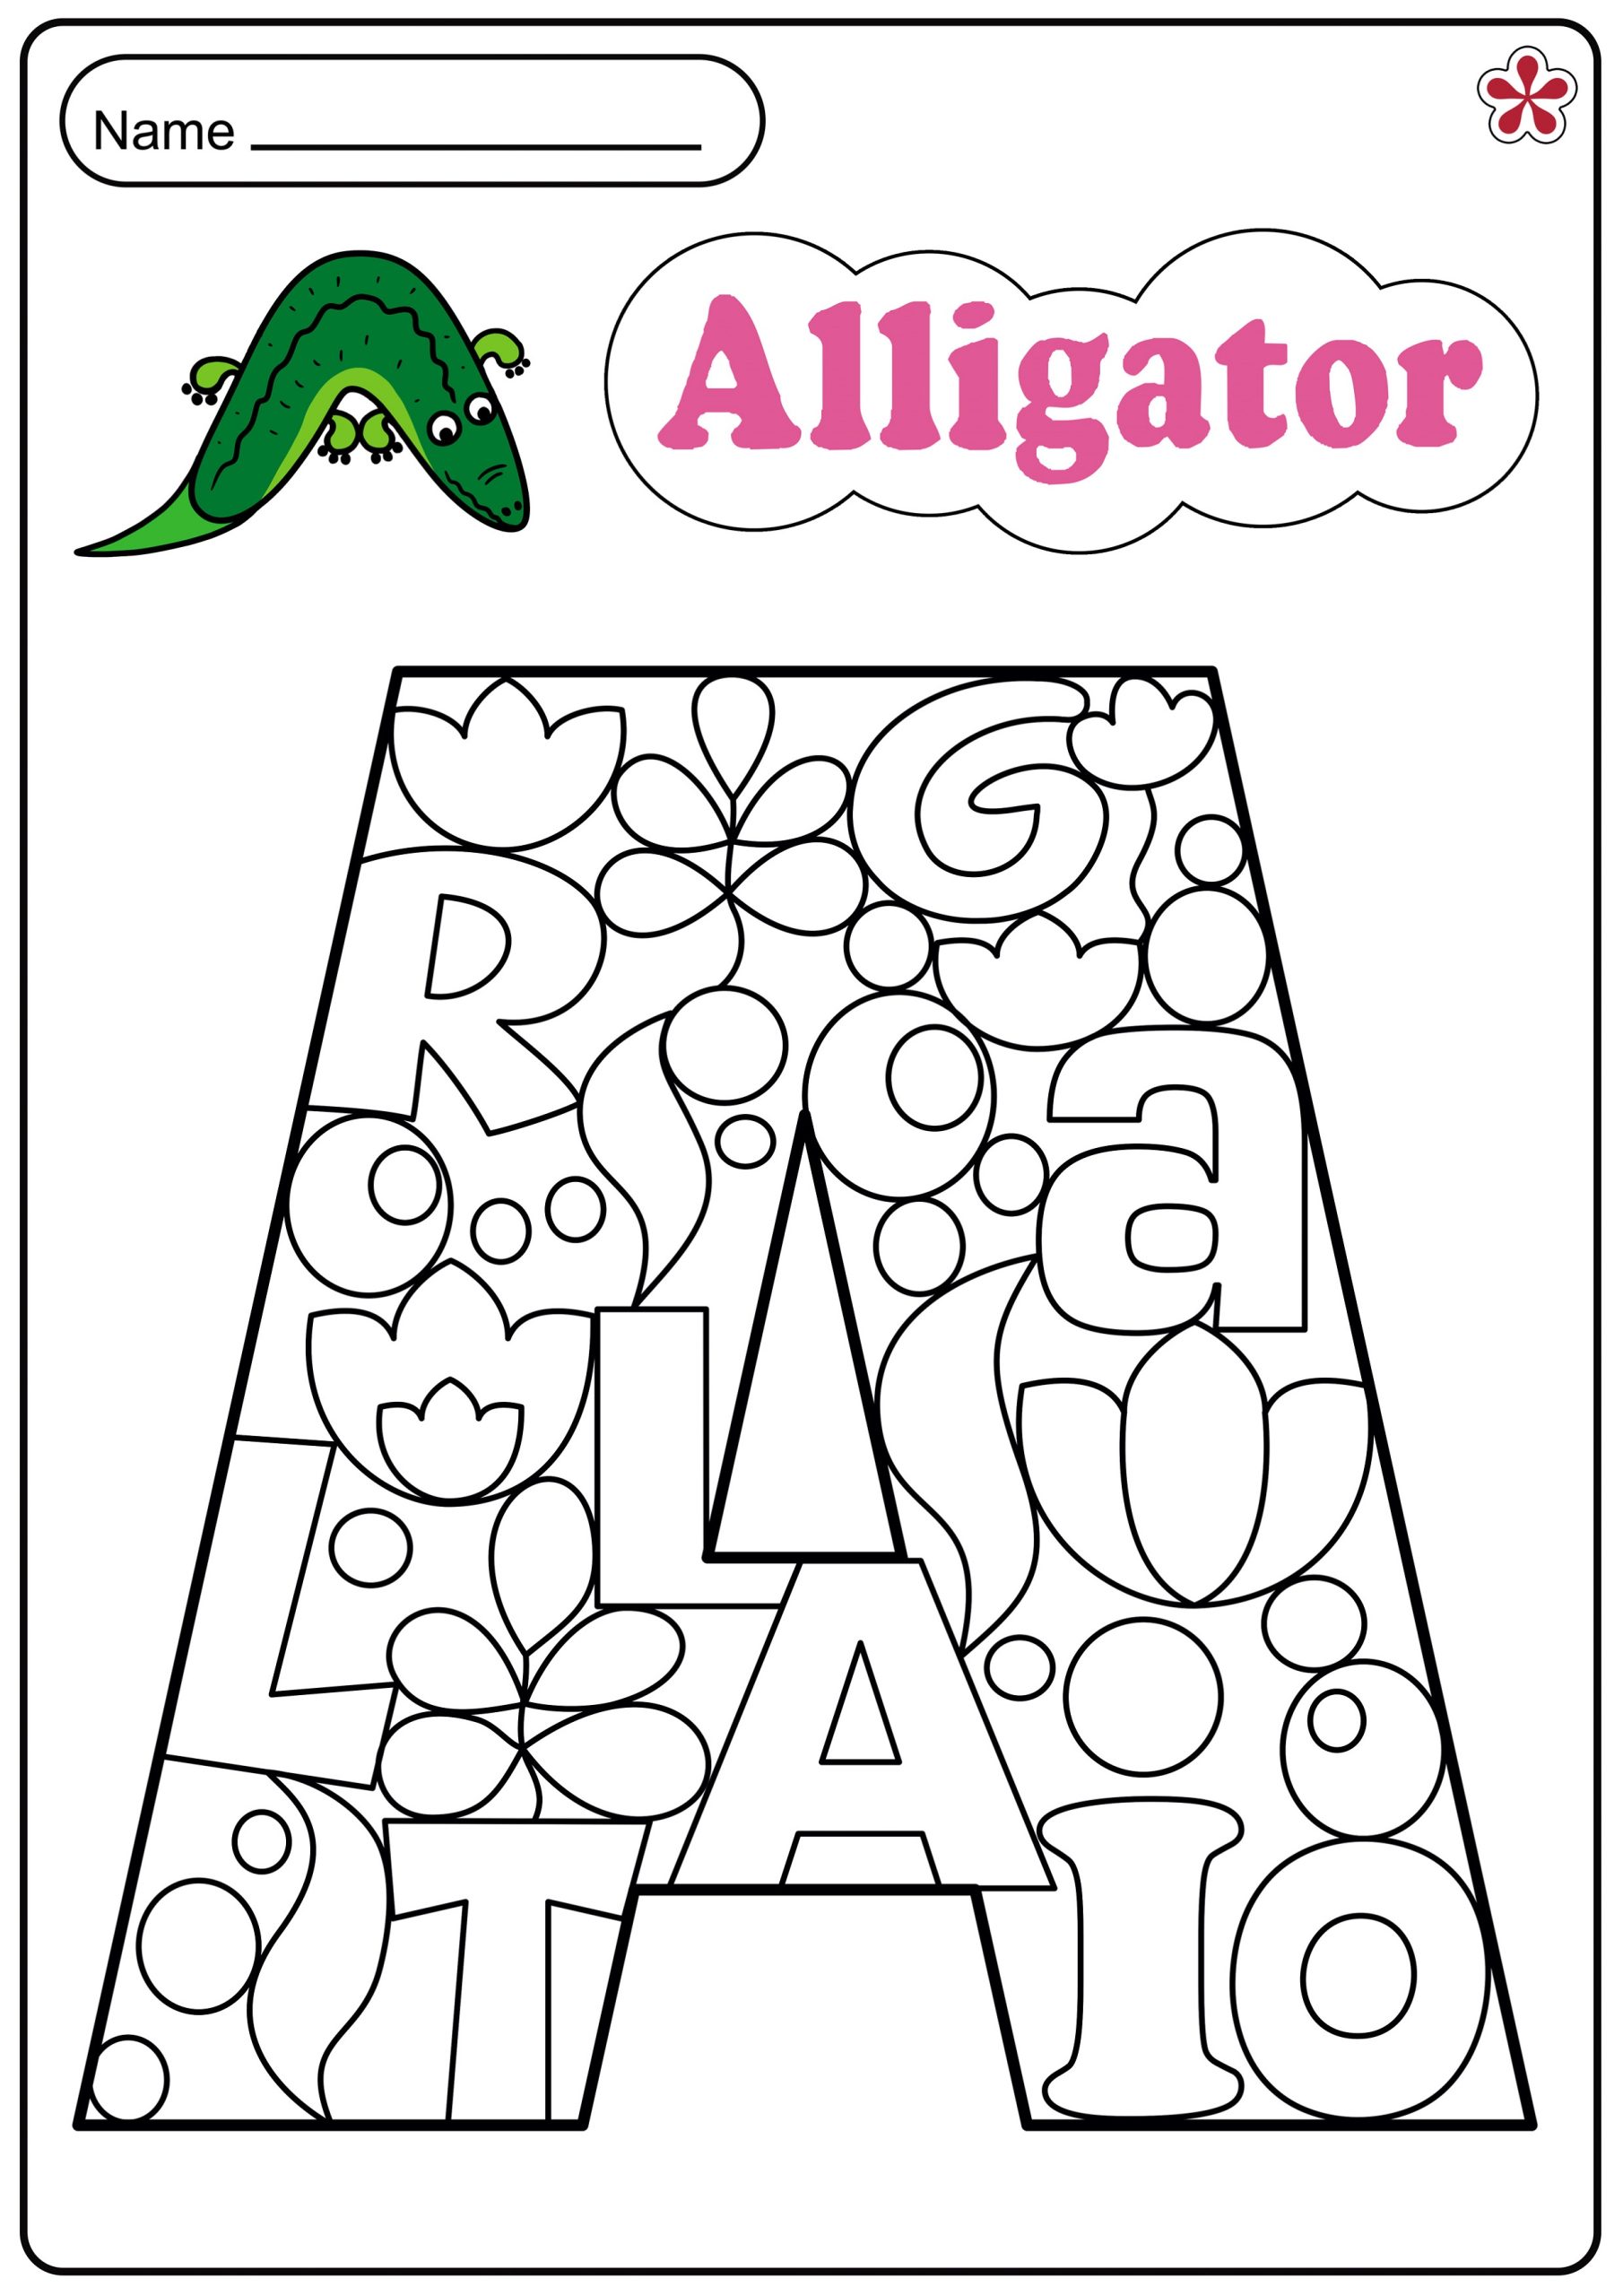 Worksheet For Letter A Aligator